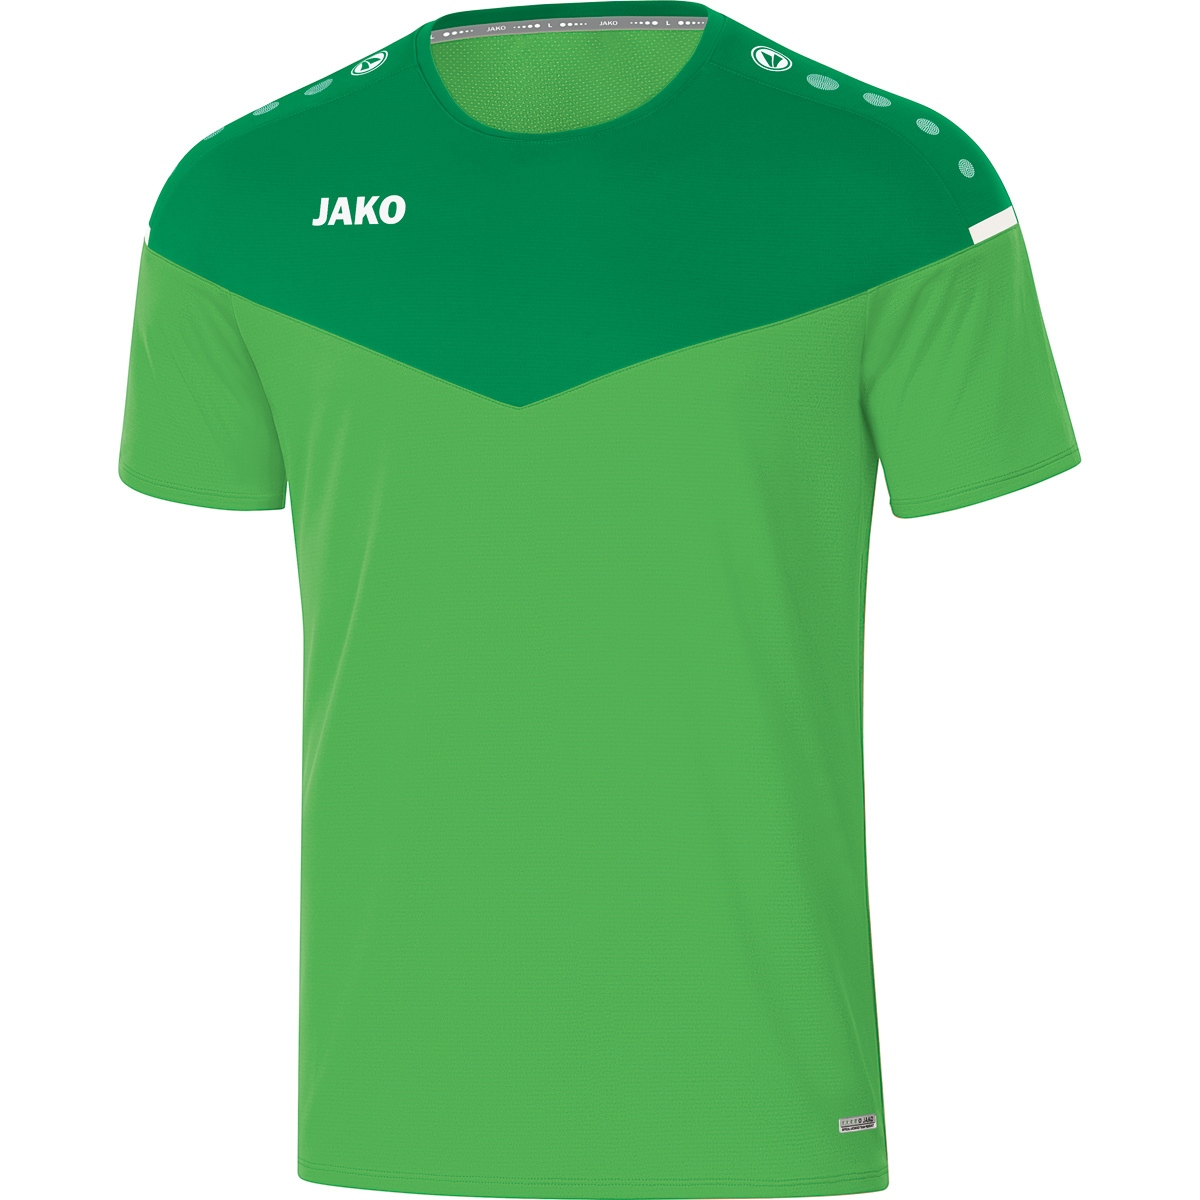 JAKO Gr. green/sportgrün, Champ soft 2.0 6120 Herren, XL, T-Shirt